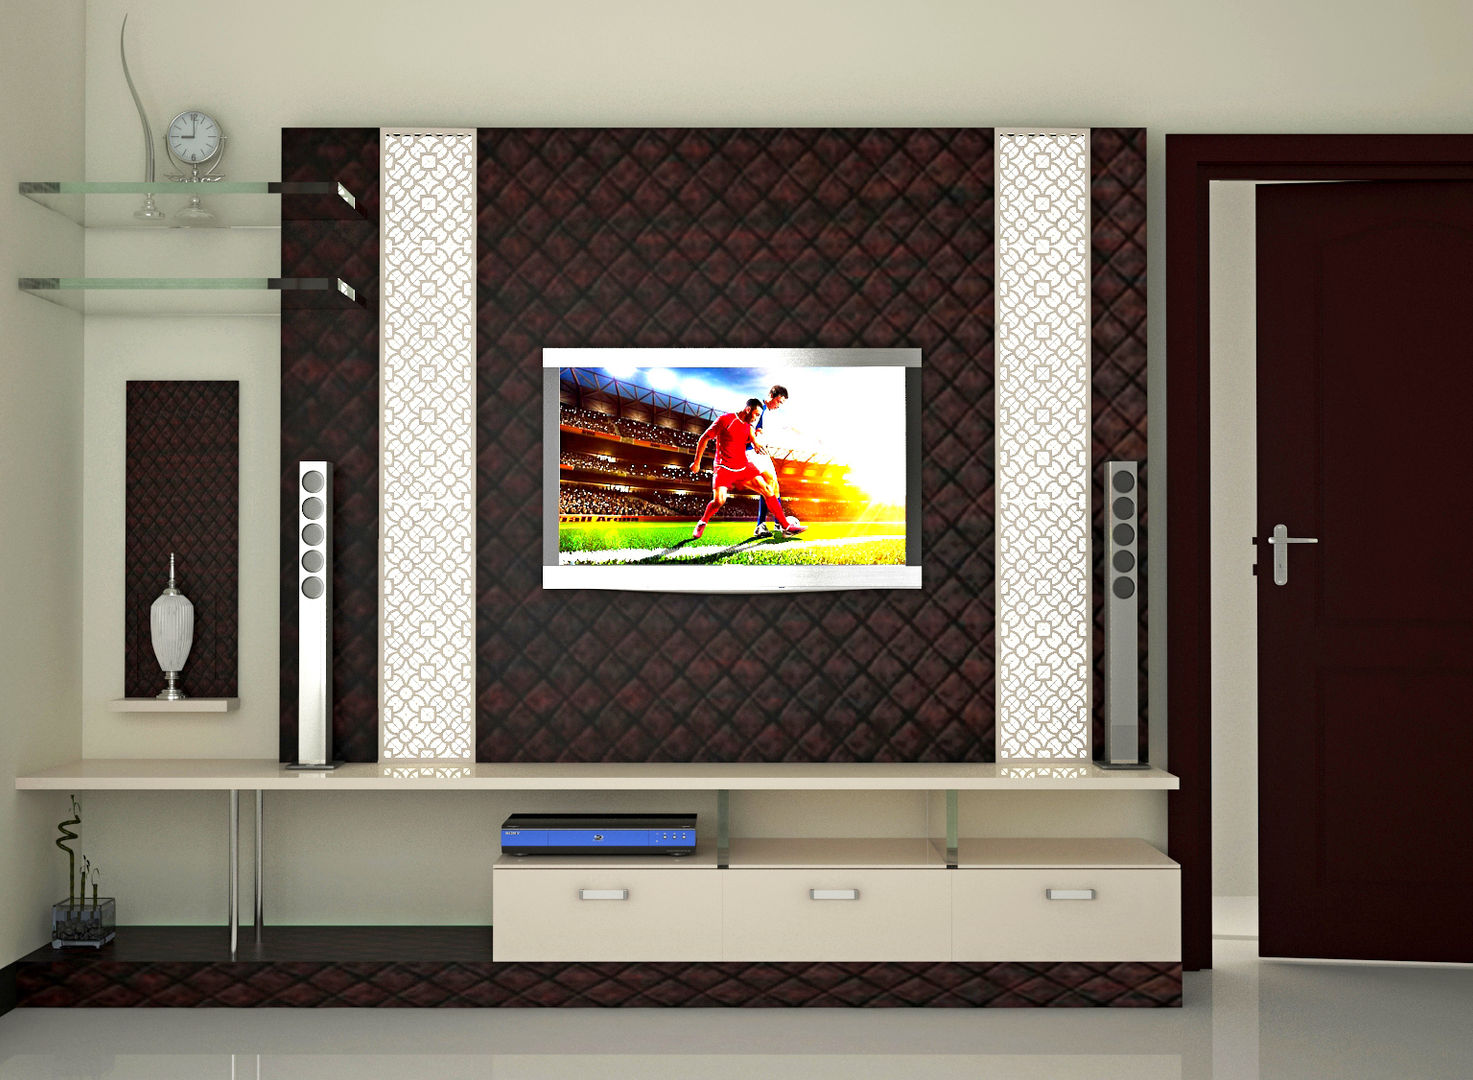 Independent Bungalow, RR Nagar - Mr. Mohan, DECOR DREAMS DECOR DREAMS Salas modernas Muebles de televisión y dispositivos electrónicos